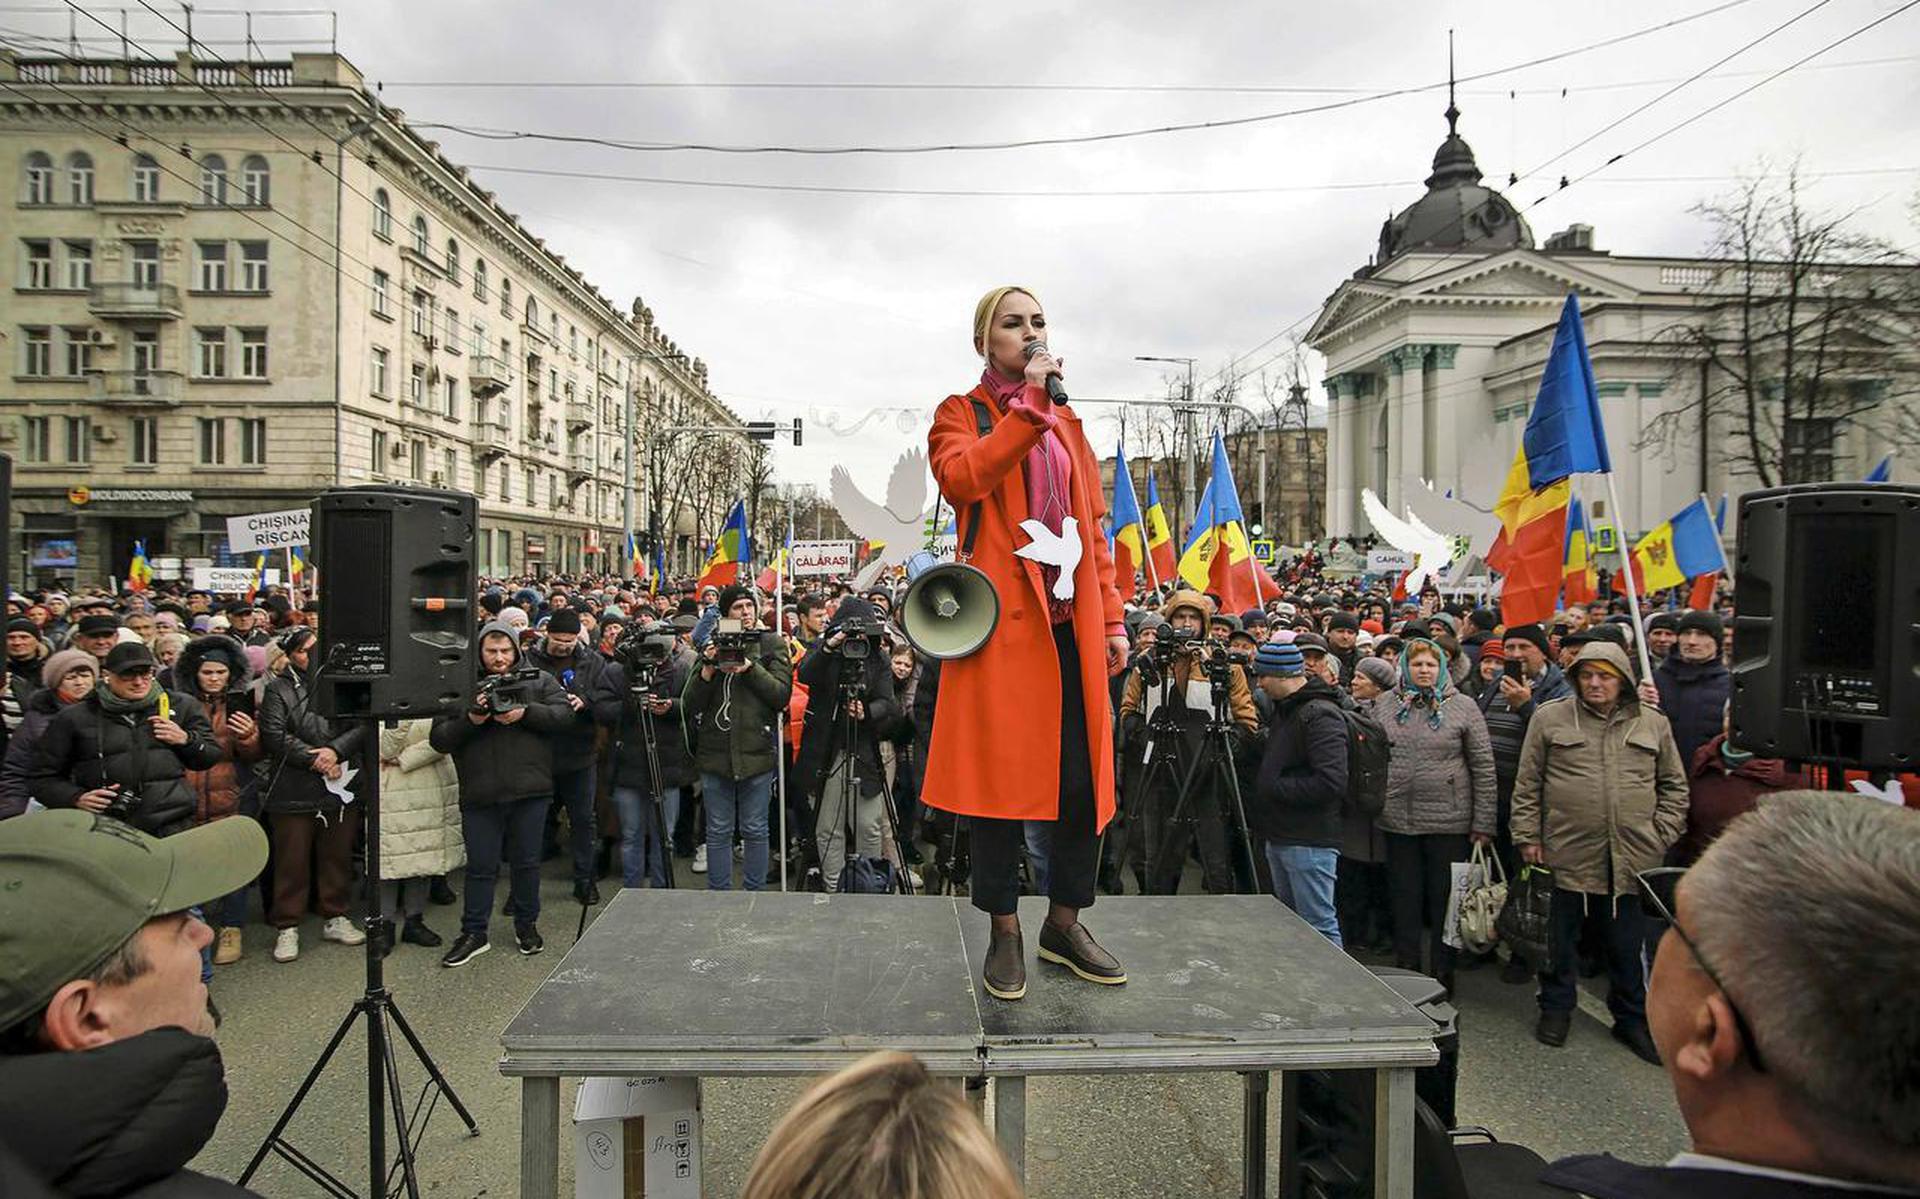 Marina Tauber van de Shor-partij spreekt tijdens een demonstratie tegen de pro-westerse regering.